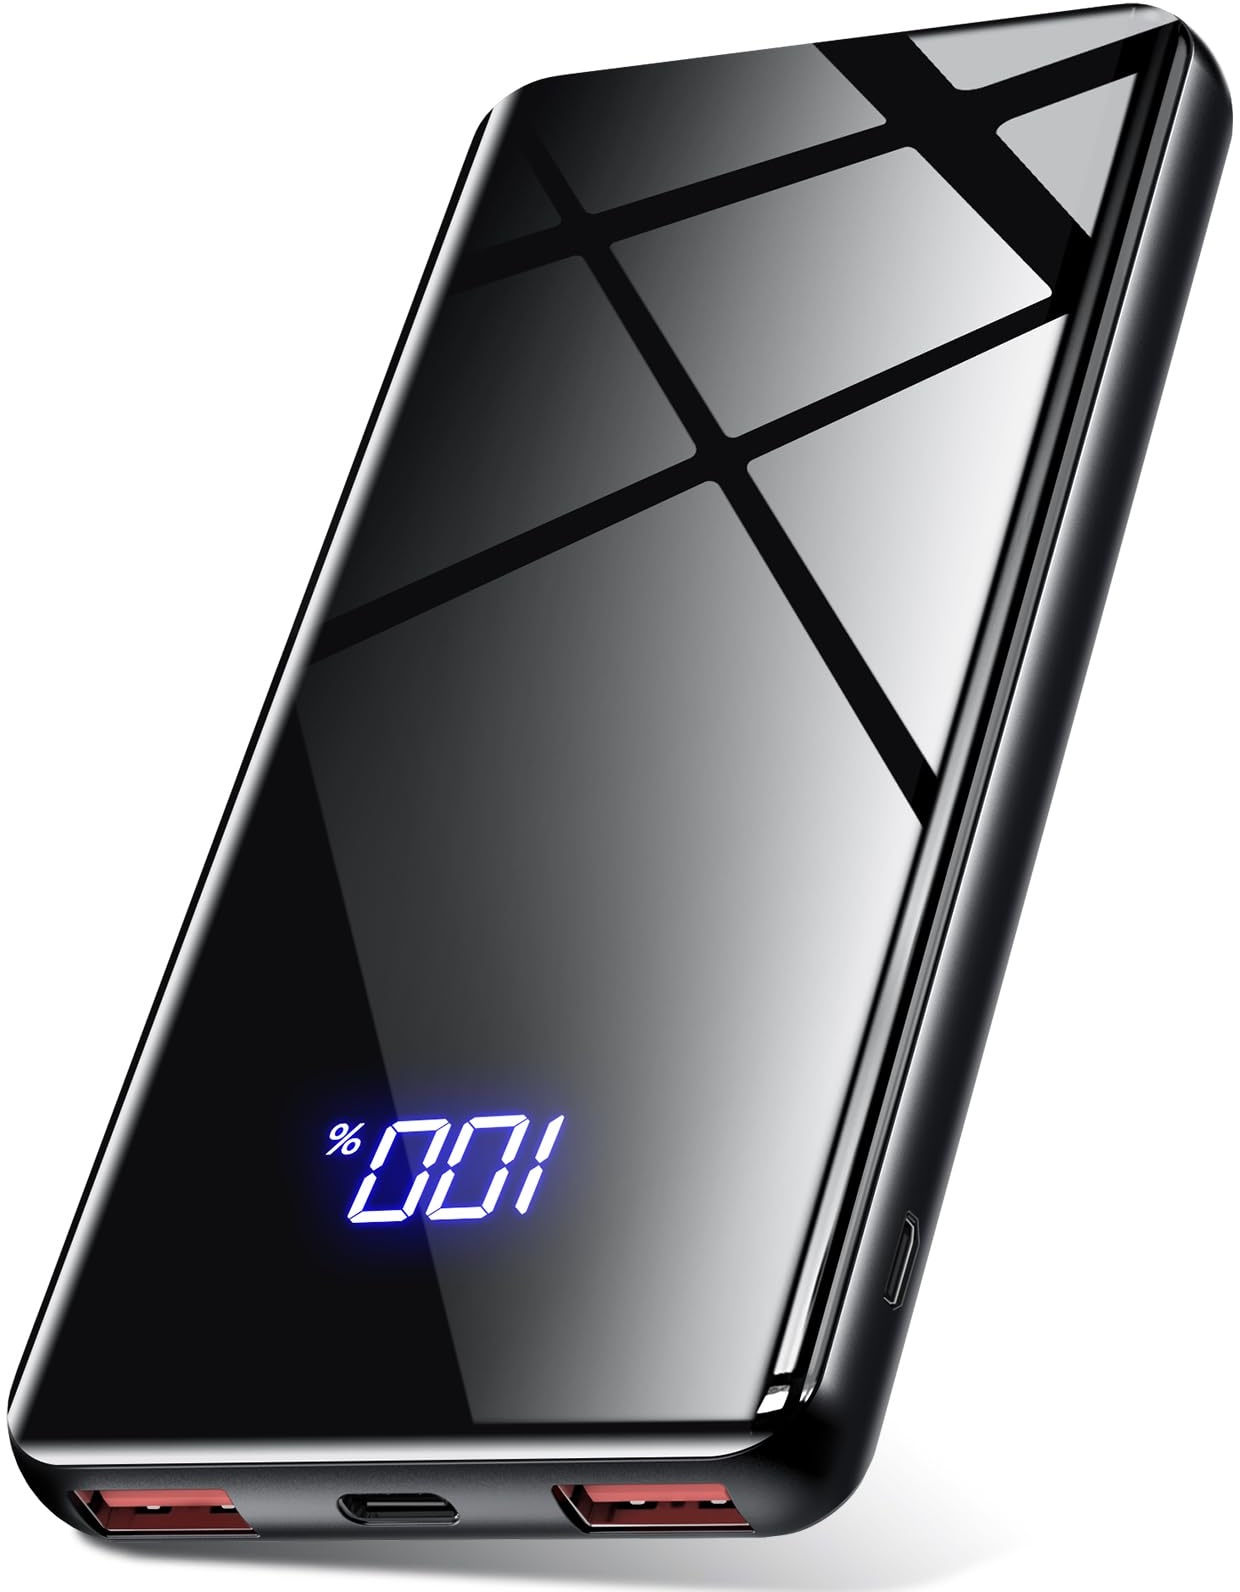 Lazci Power Bank, 22,5W Powerbank 20000mAh mit USB-C Input & Output, PD 3.0 QC 4.0 Externer Handyakkus, Kompatibel mit iPhone, Samsung Galaxy, iPad und Mehr - Schwarz